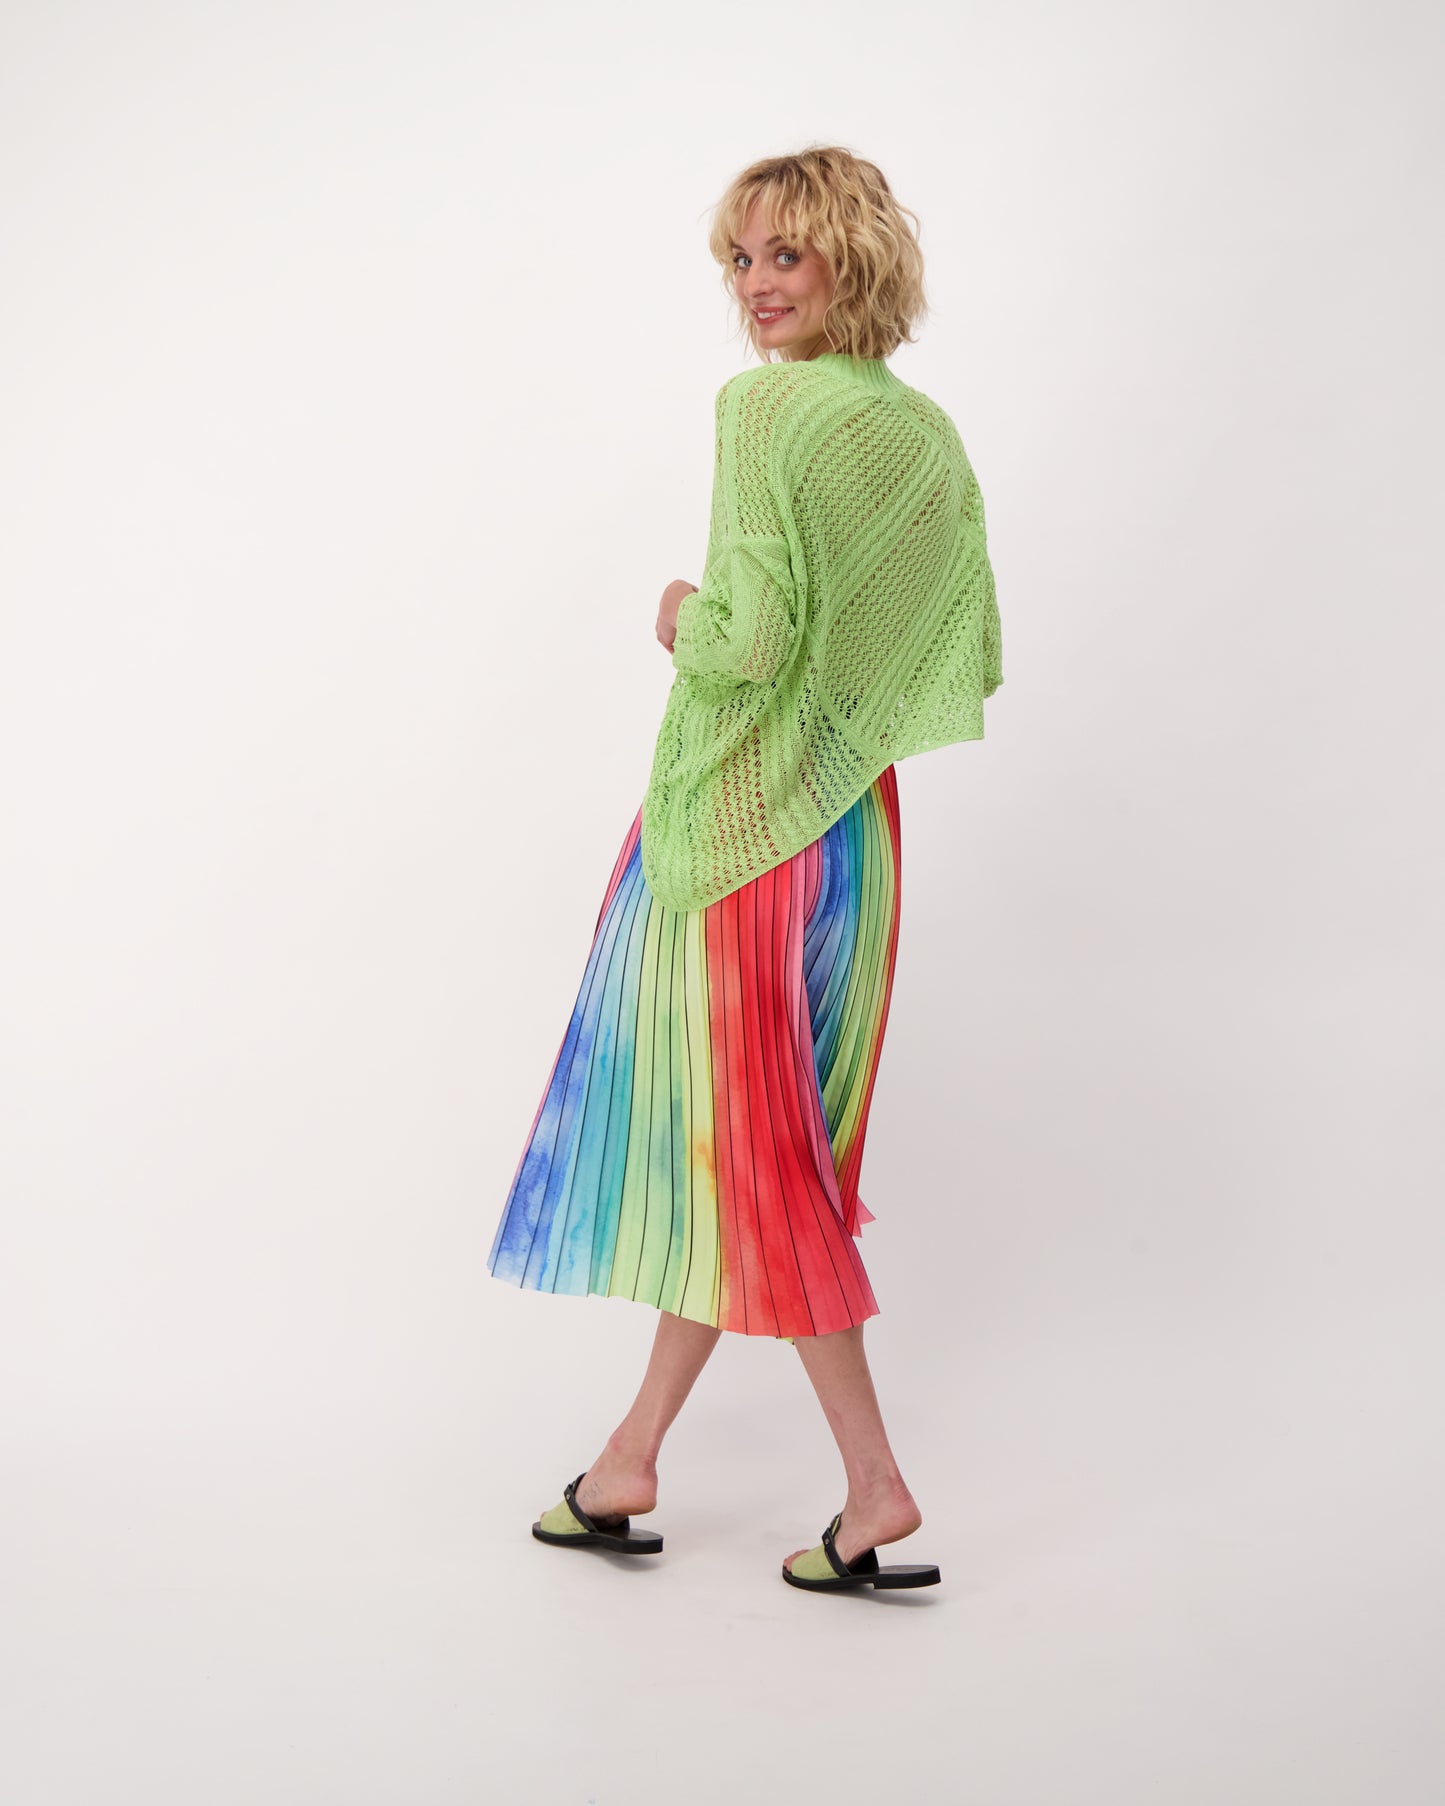 Rainbow Plisse Pleated Skirt